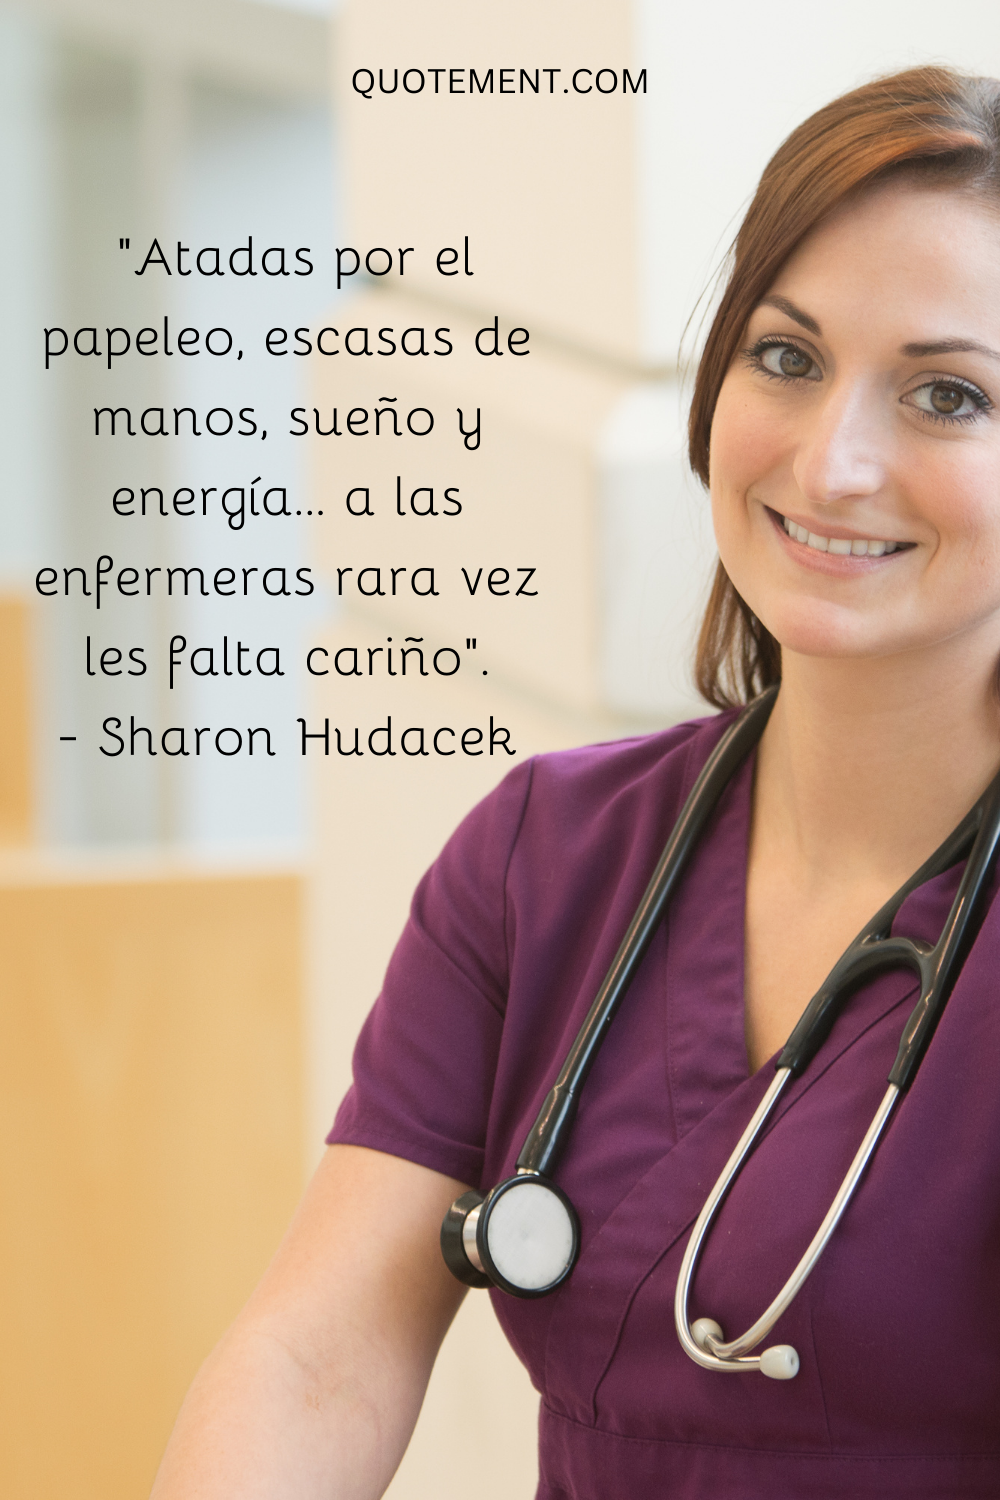 "Atadas por el papeleo, escasas de manos, sueño y energía... a las enfermeras rara vez les falta cariño". - Sharon Hudacek